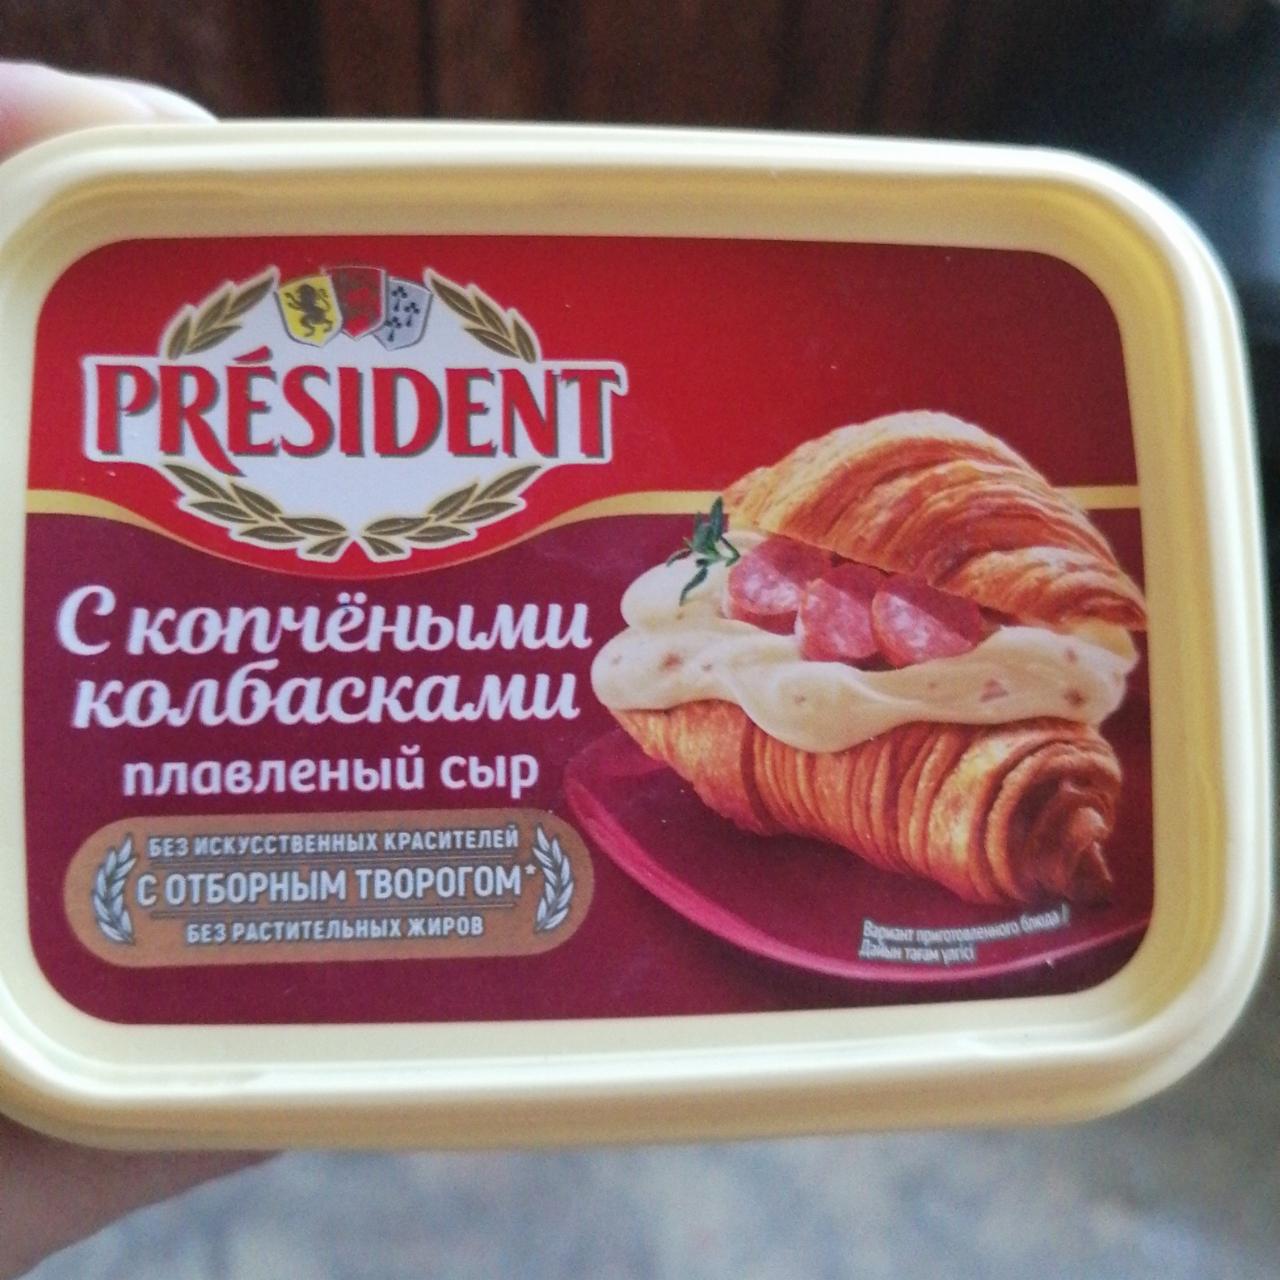 Фото - Плавленый сыр с копчёными колбасками Président